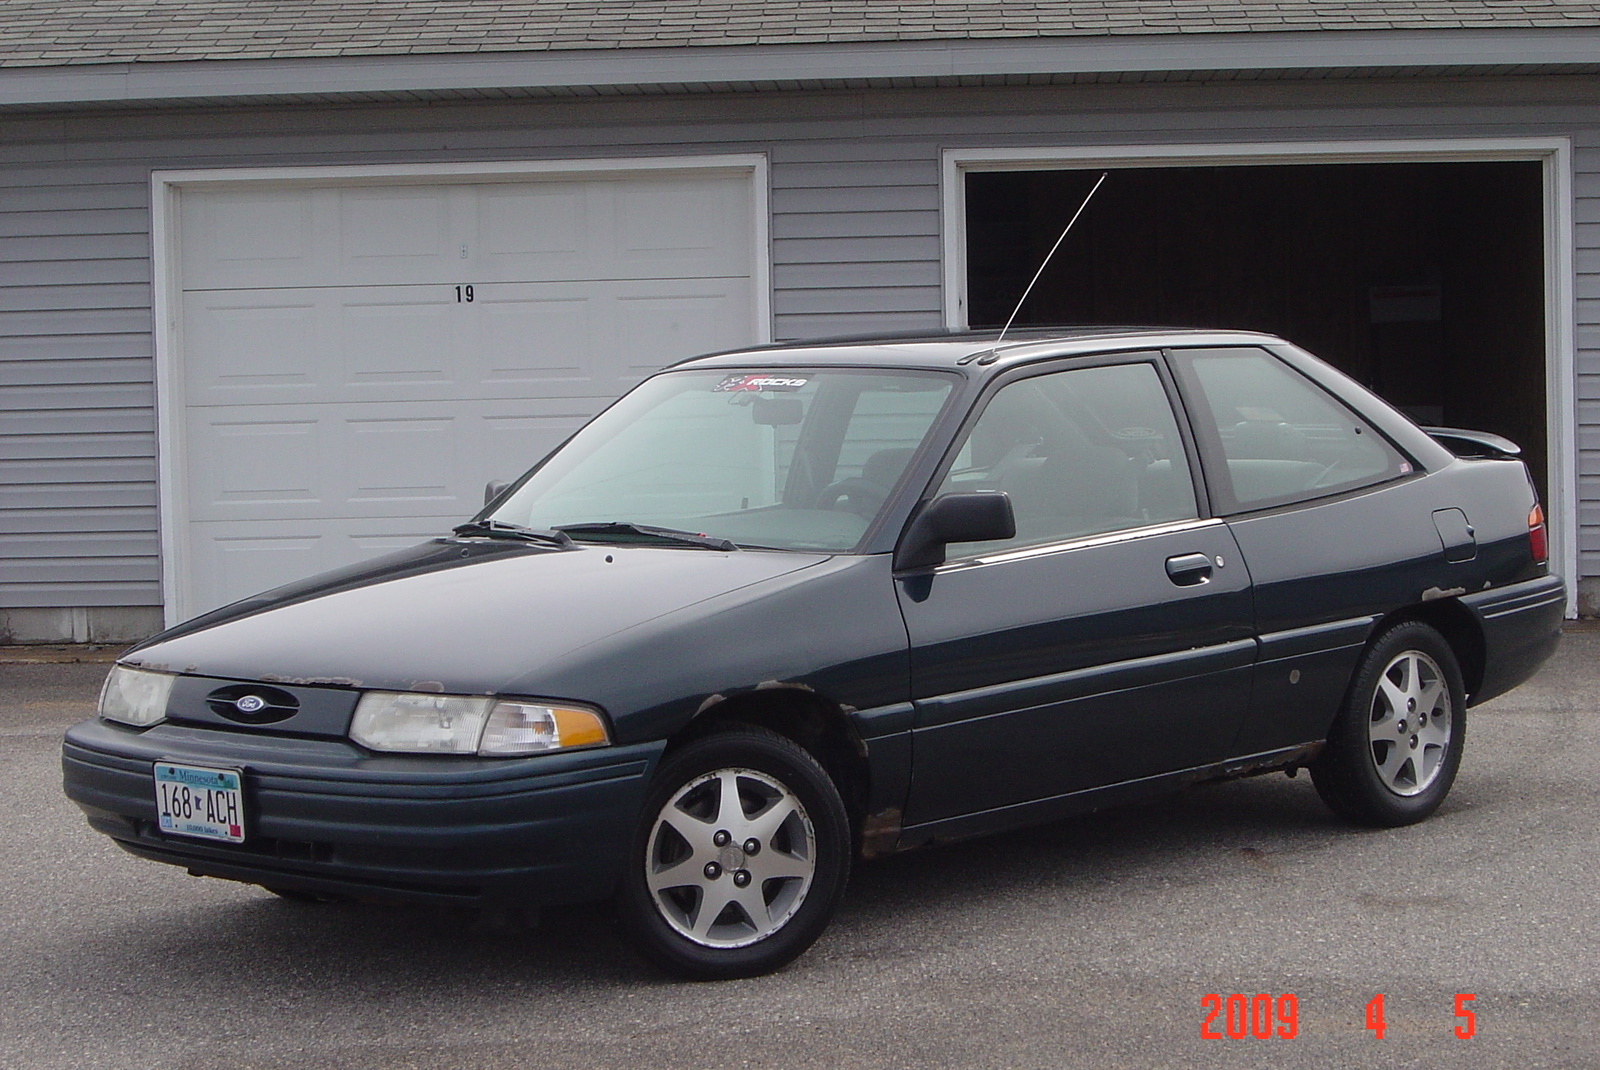 1995 Ford escort hatchback lx